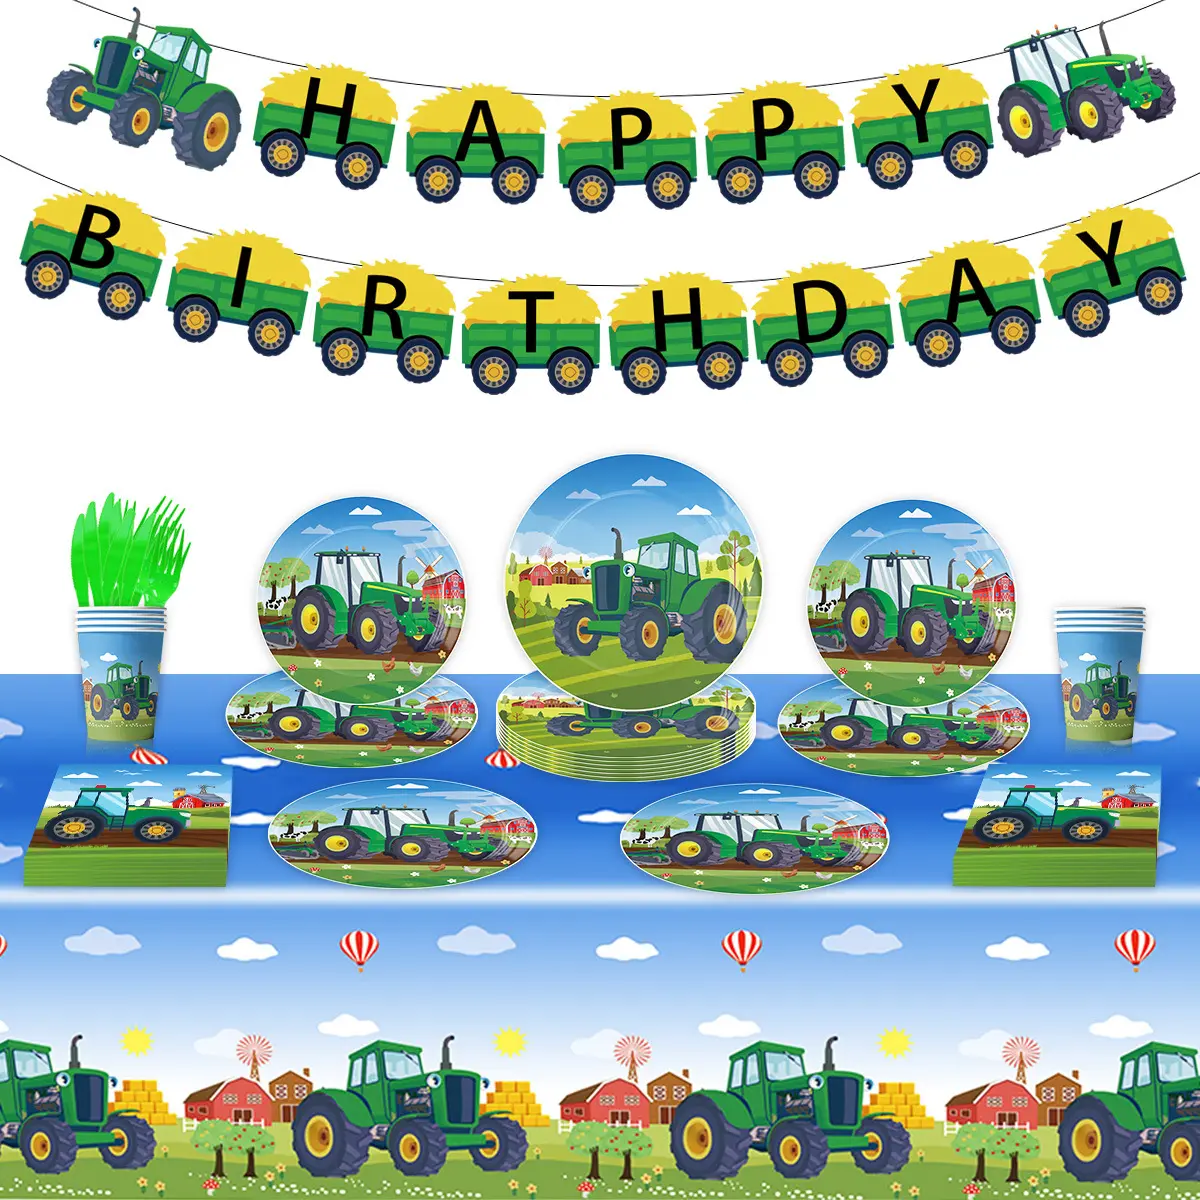 Tracteur fête tracteur papier joyeux anniversaire bannière assiette serviette tasse fête à la ferme